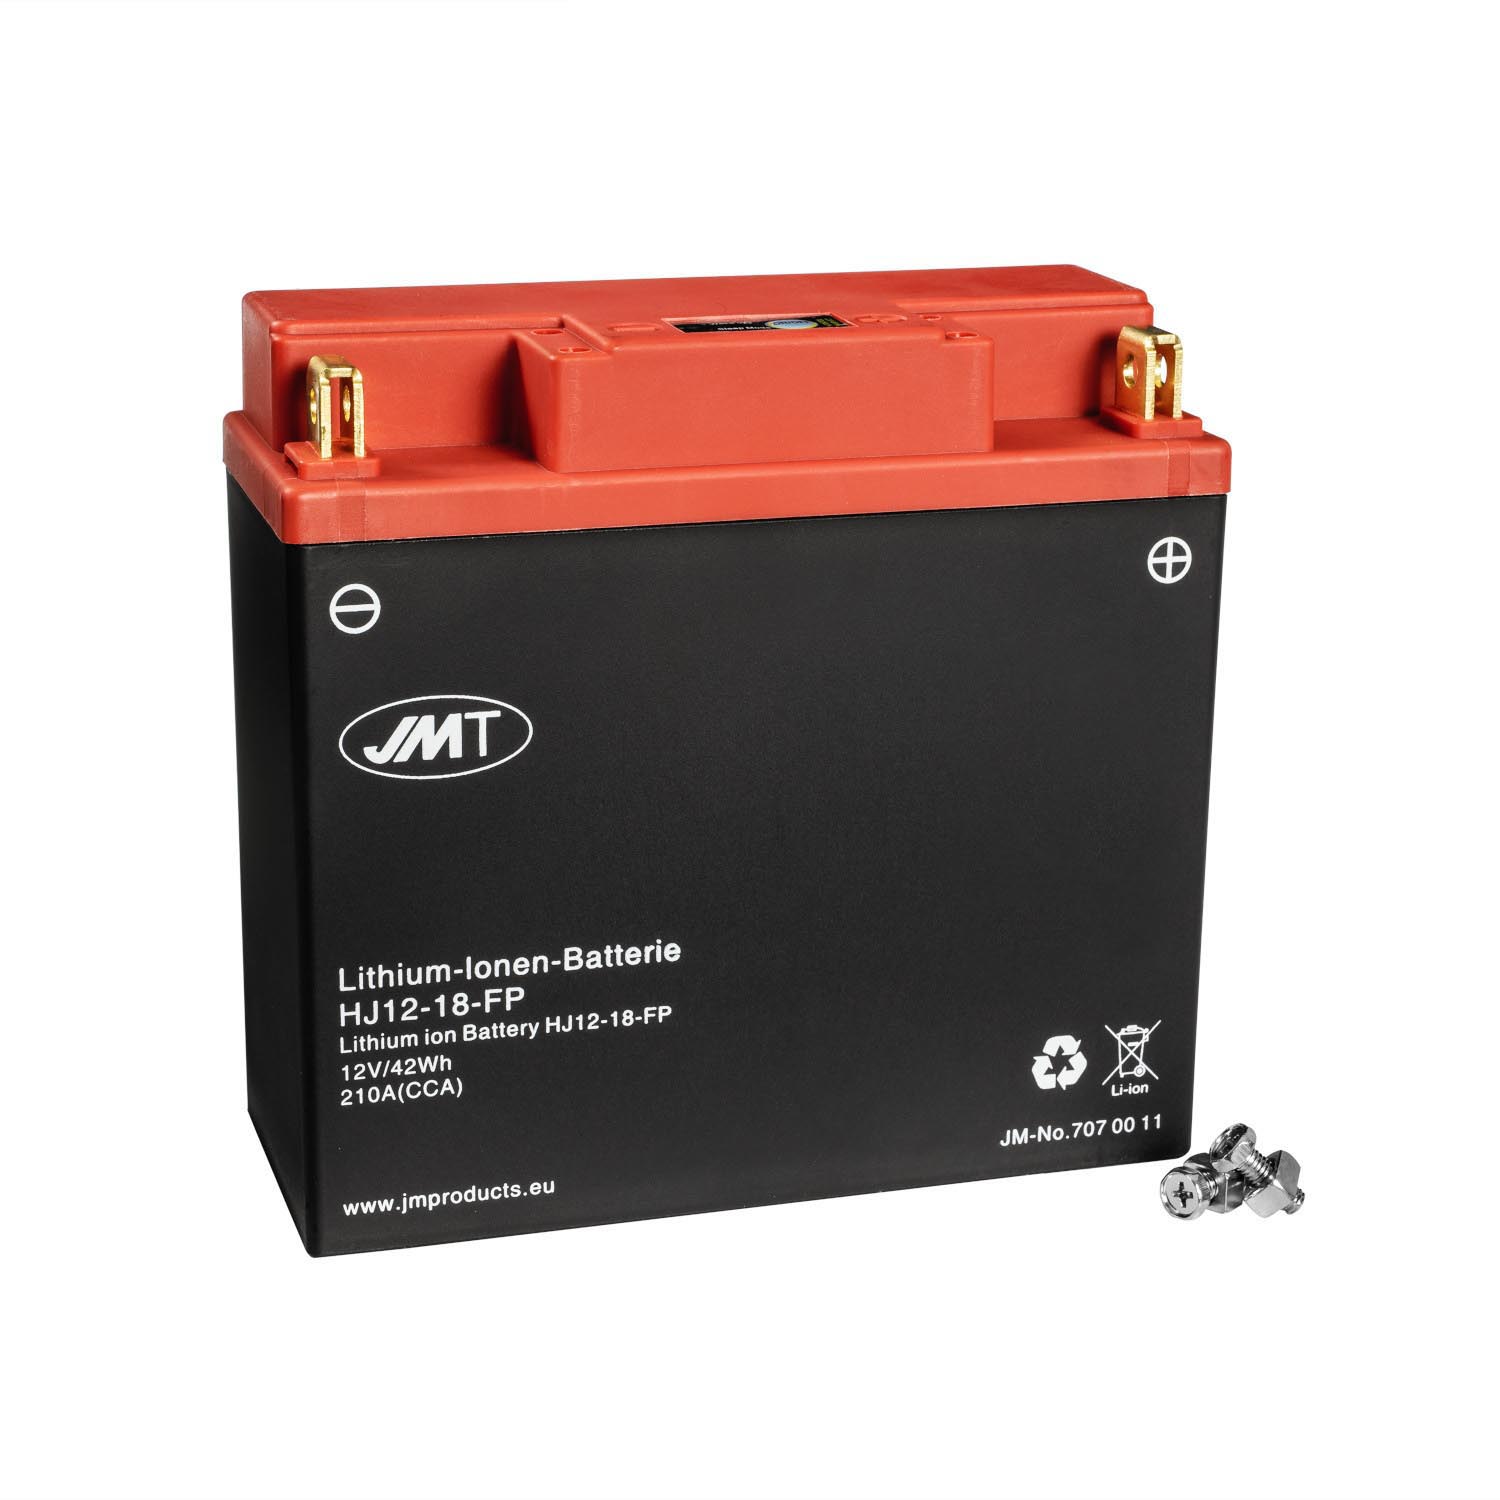 JMT Lithium-Ionen Rasentraktorbatterie HJ12-18-FP 12V